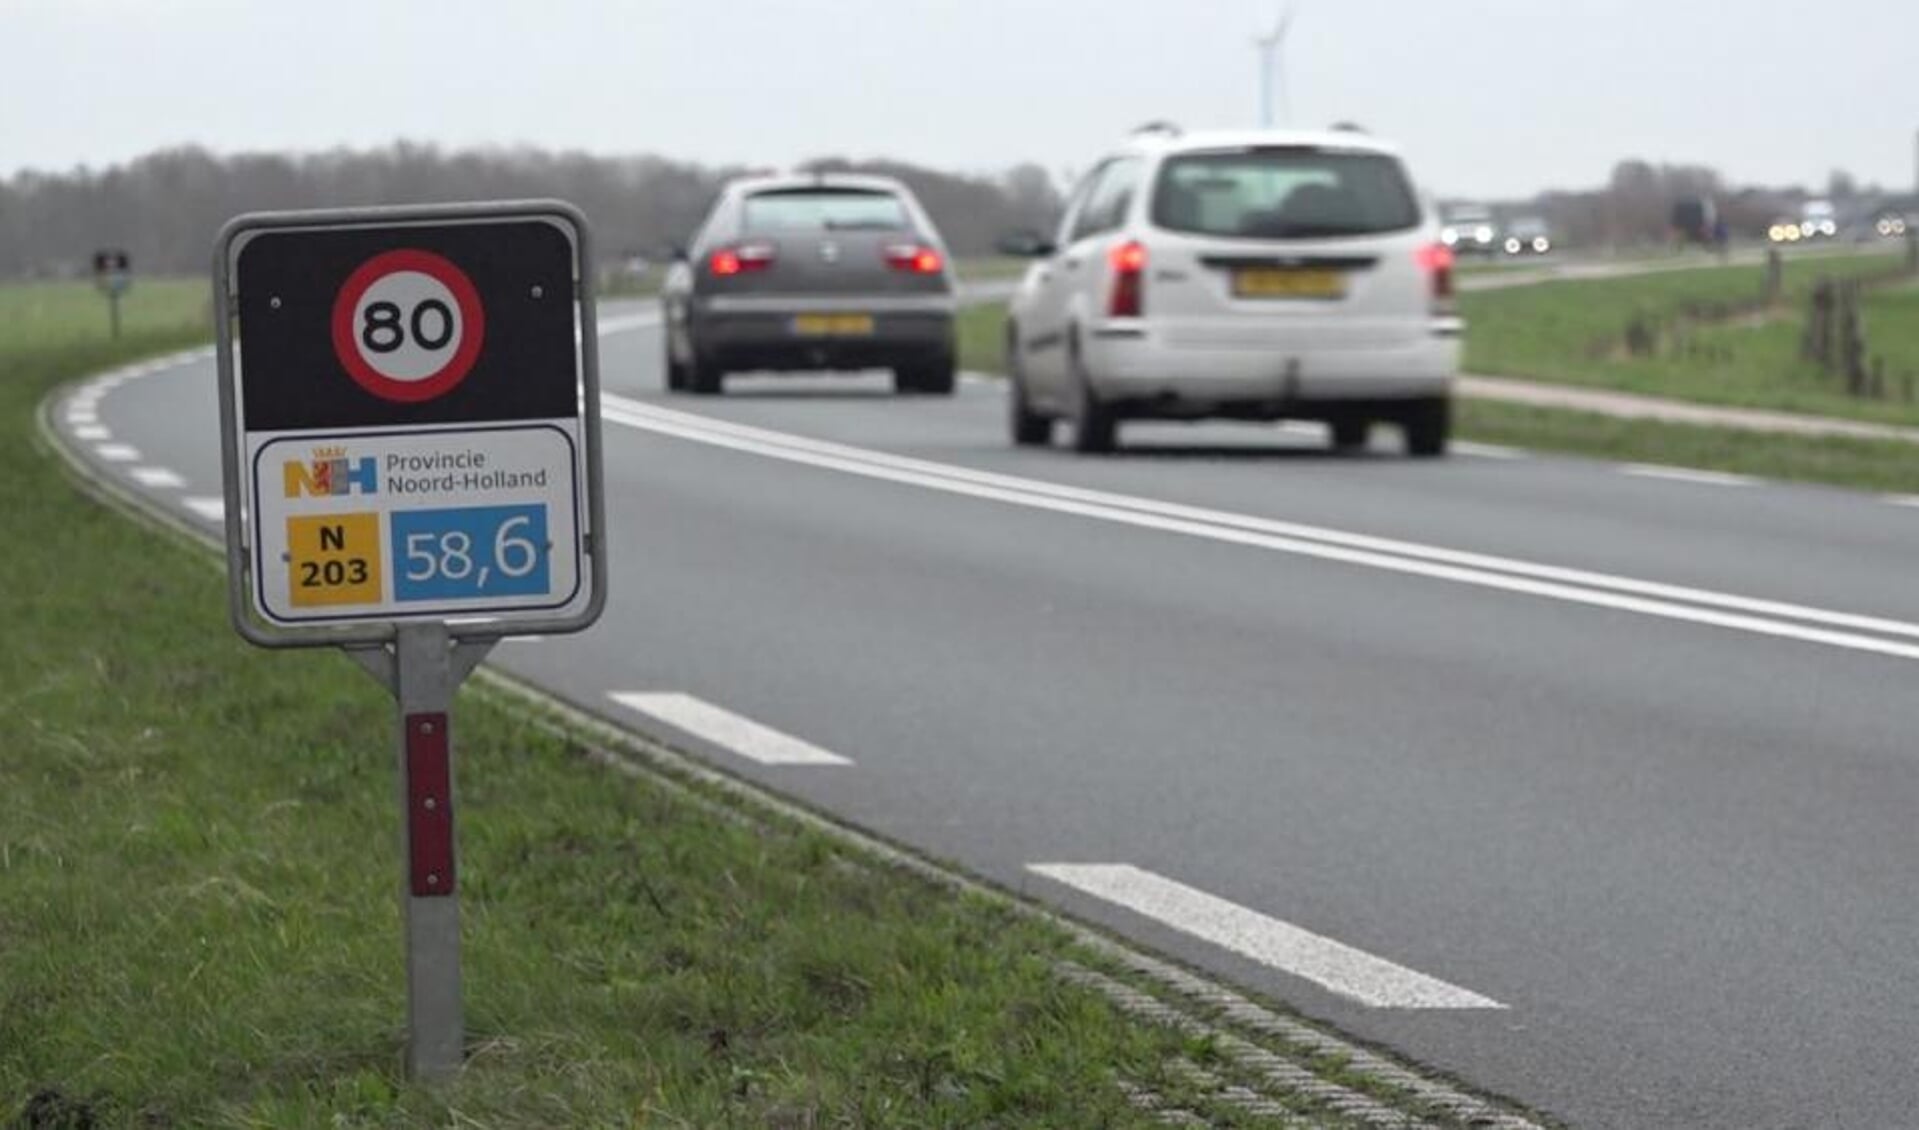 De provincie Noord-Holland en de gemeenten Castricum en Uitgeest werken samen om de verkeersveiligheid van de N203 aan te pakken. 